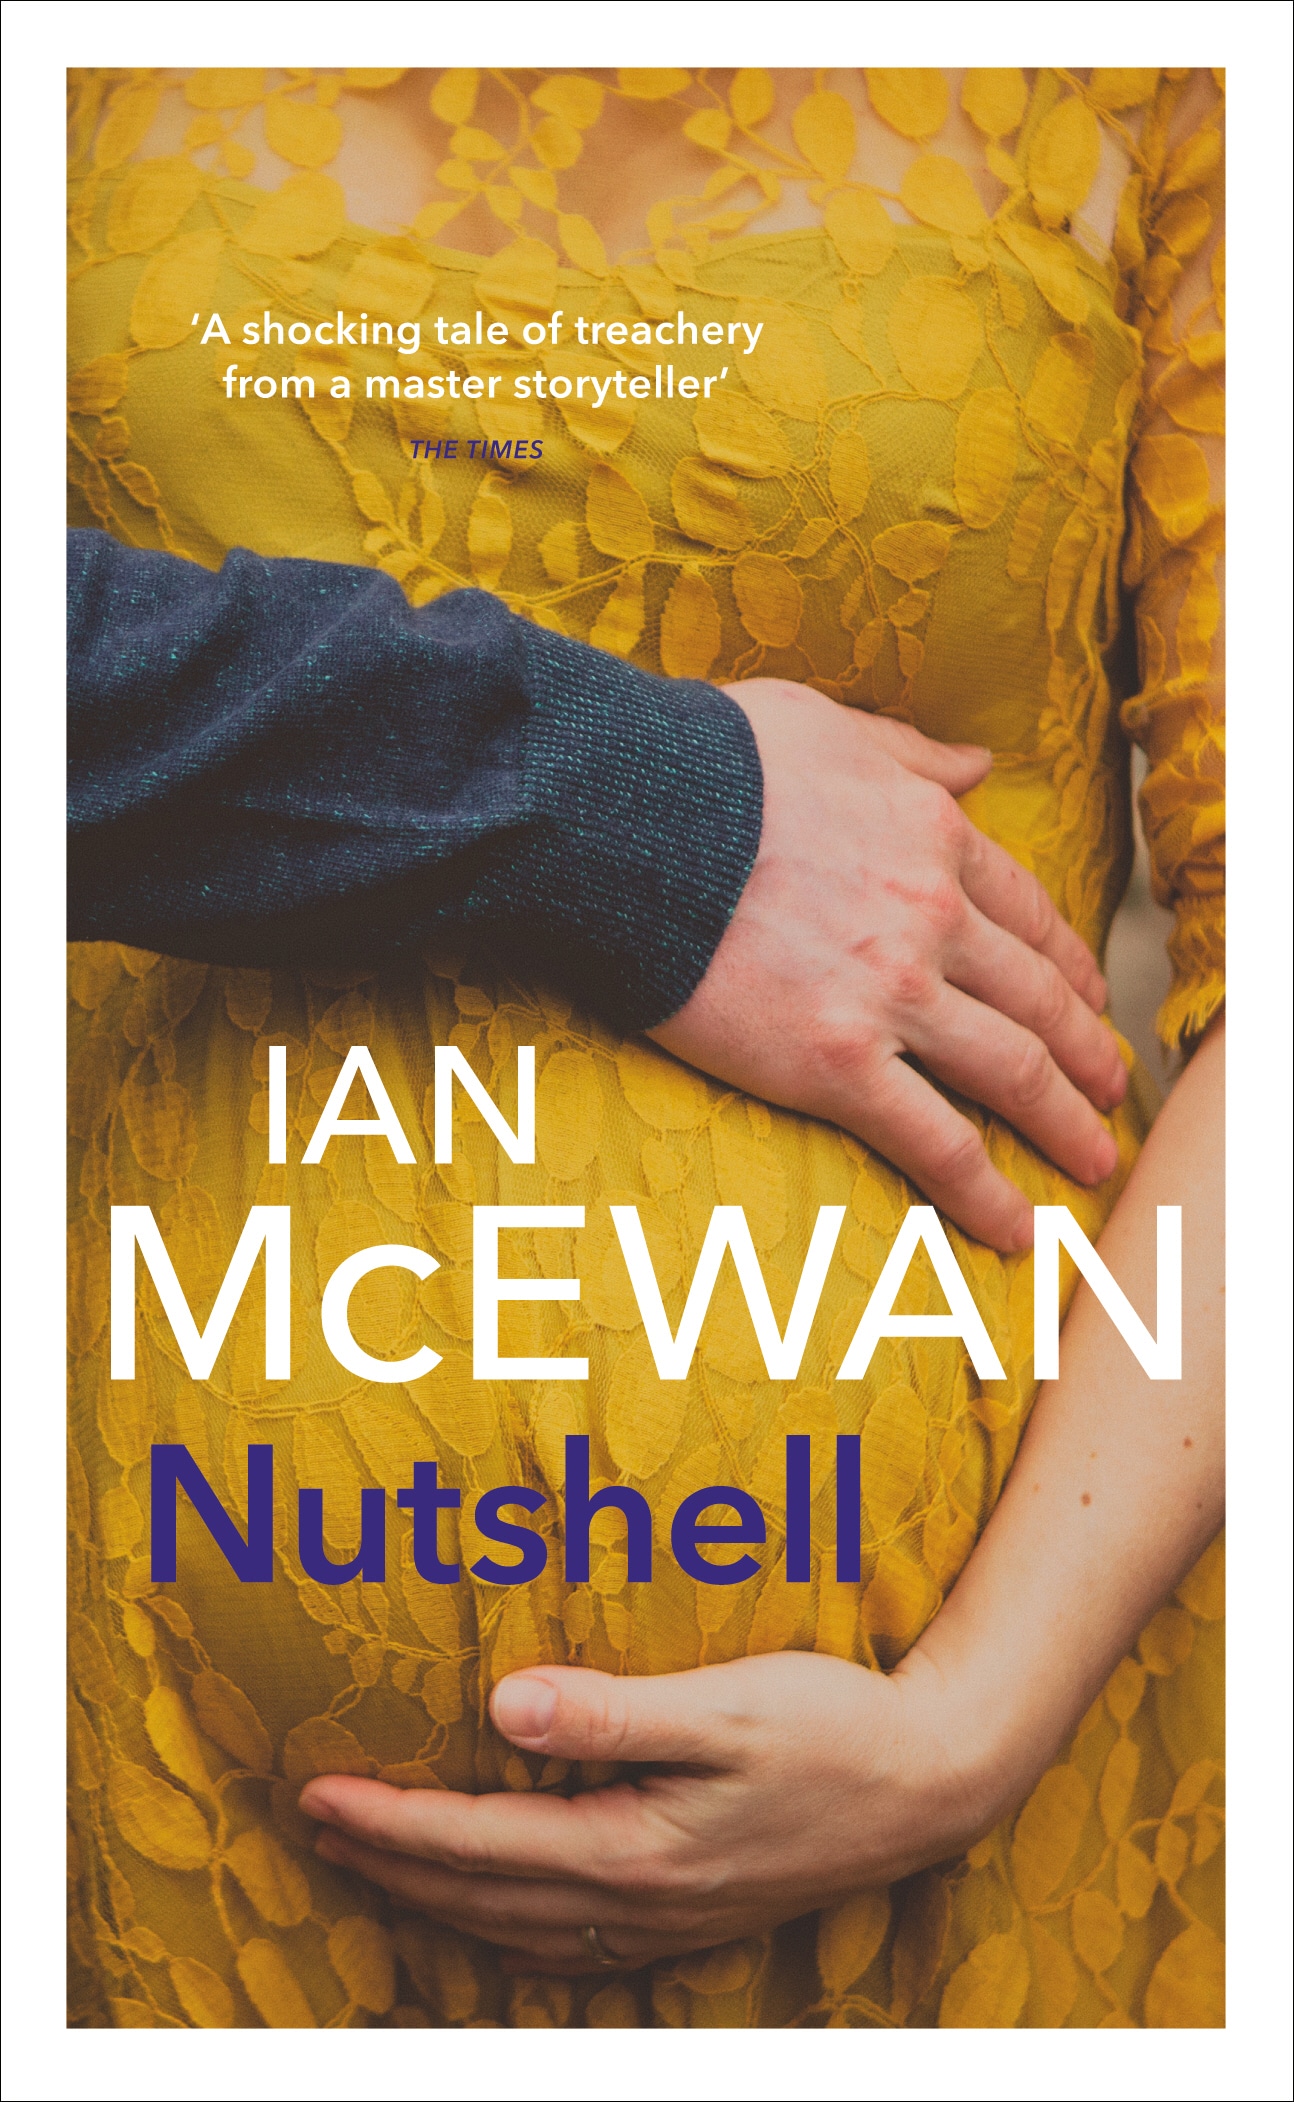 Book “Nutshell” by Ian McEwan — June 1, 2017